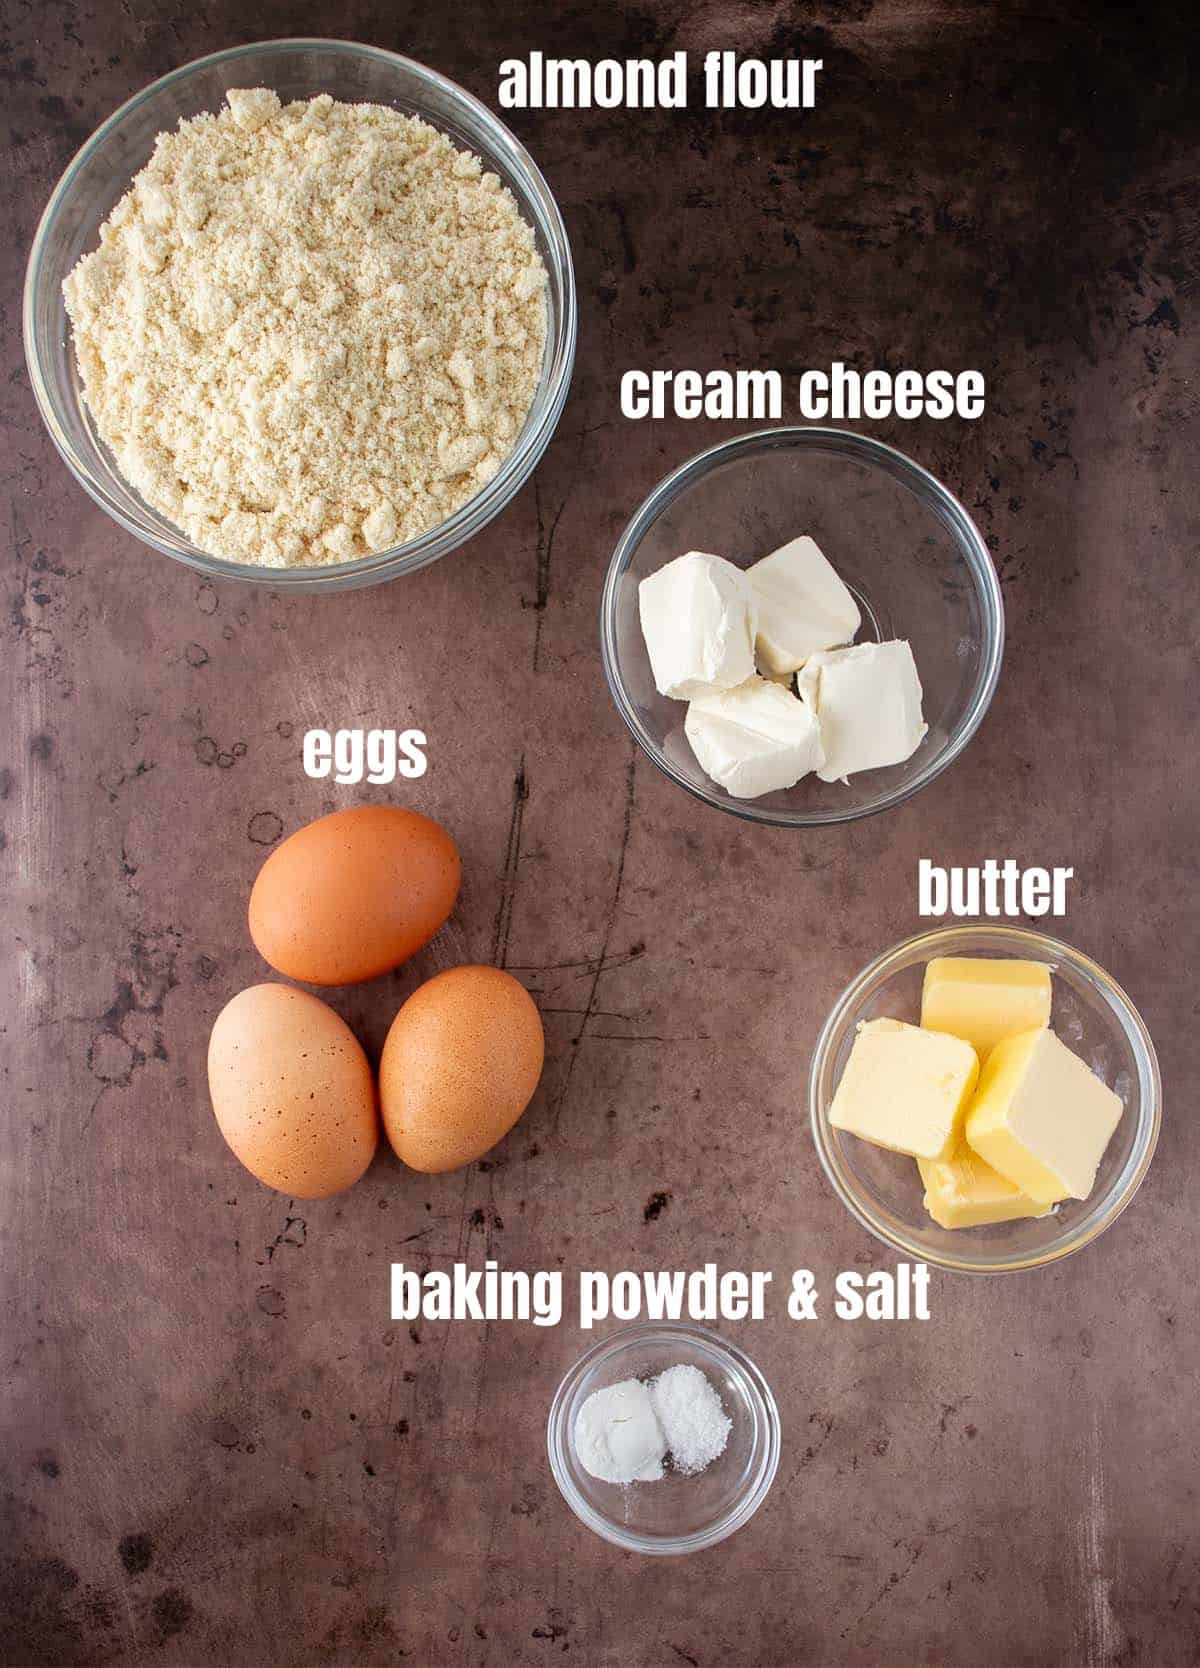 almond flour biscuits ingredients. Almond flour, cream cheese, eggs, butter, baking powder & salt.